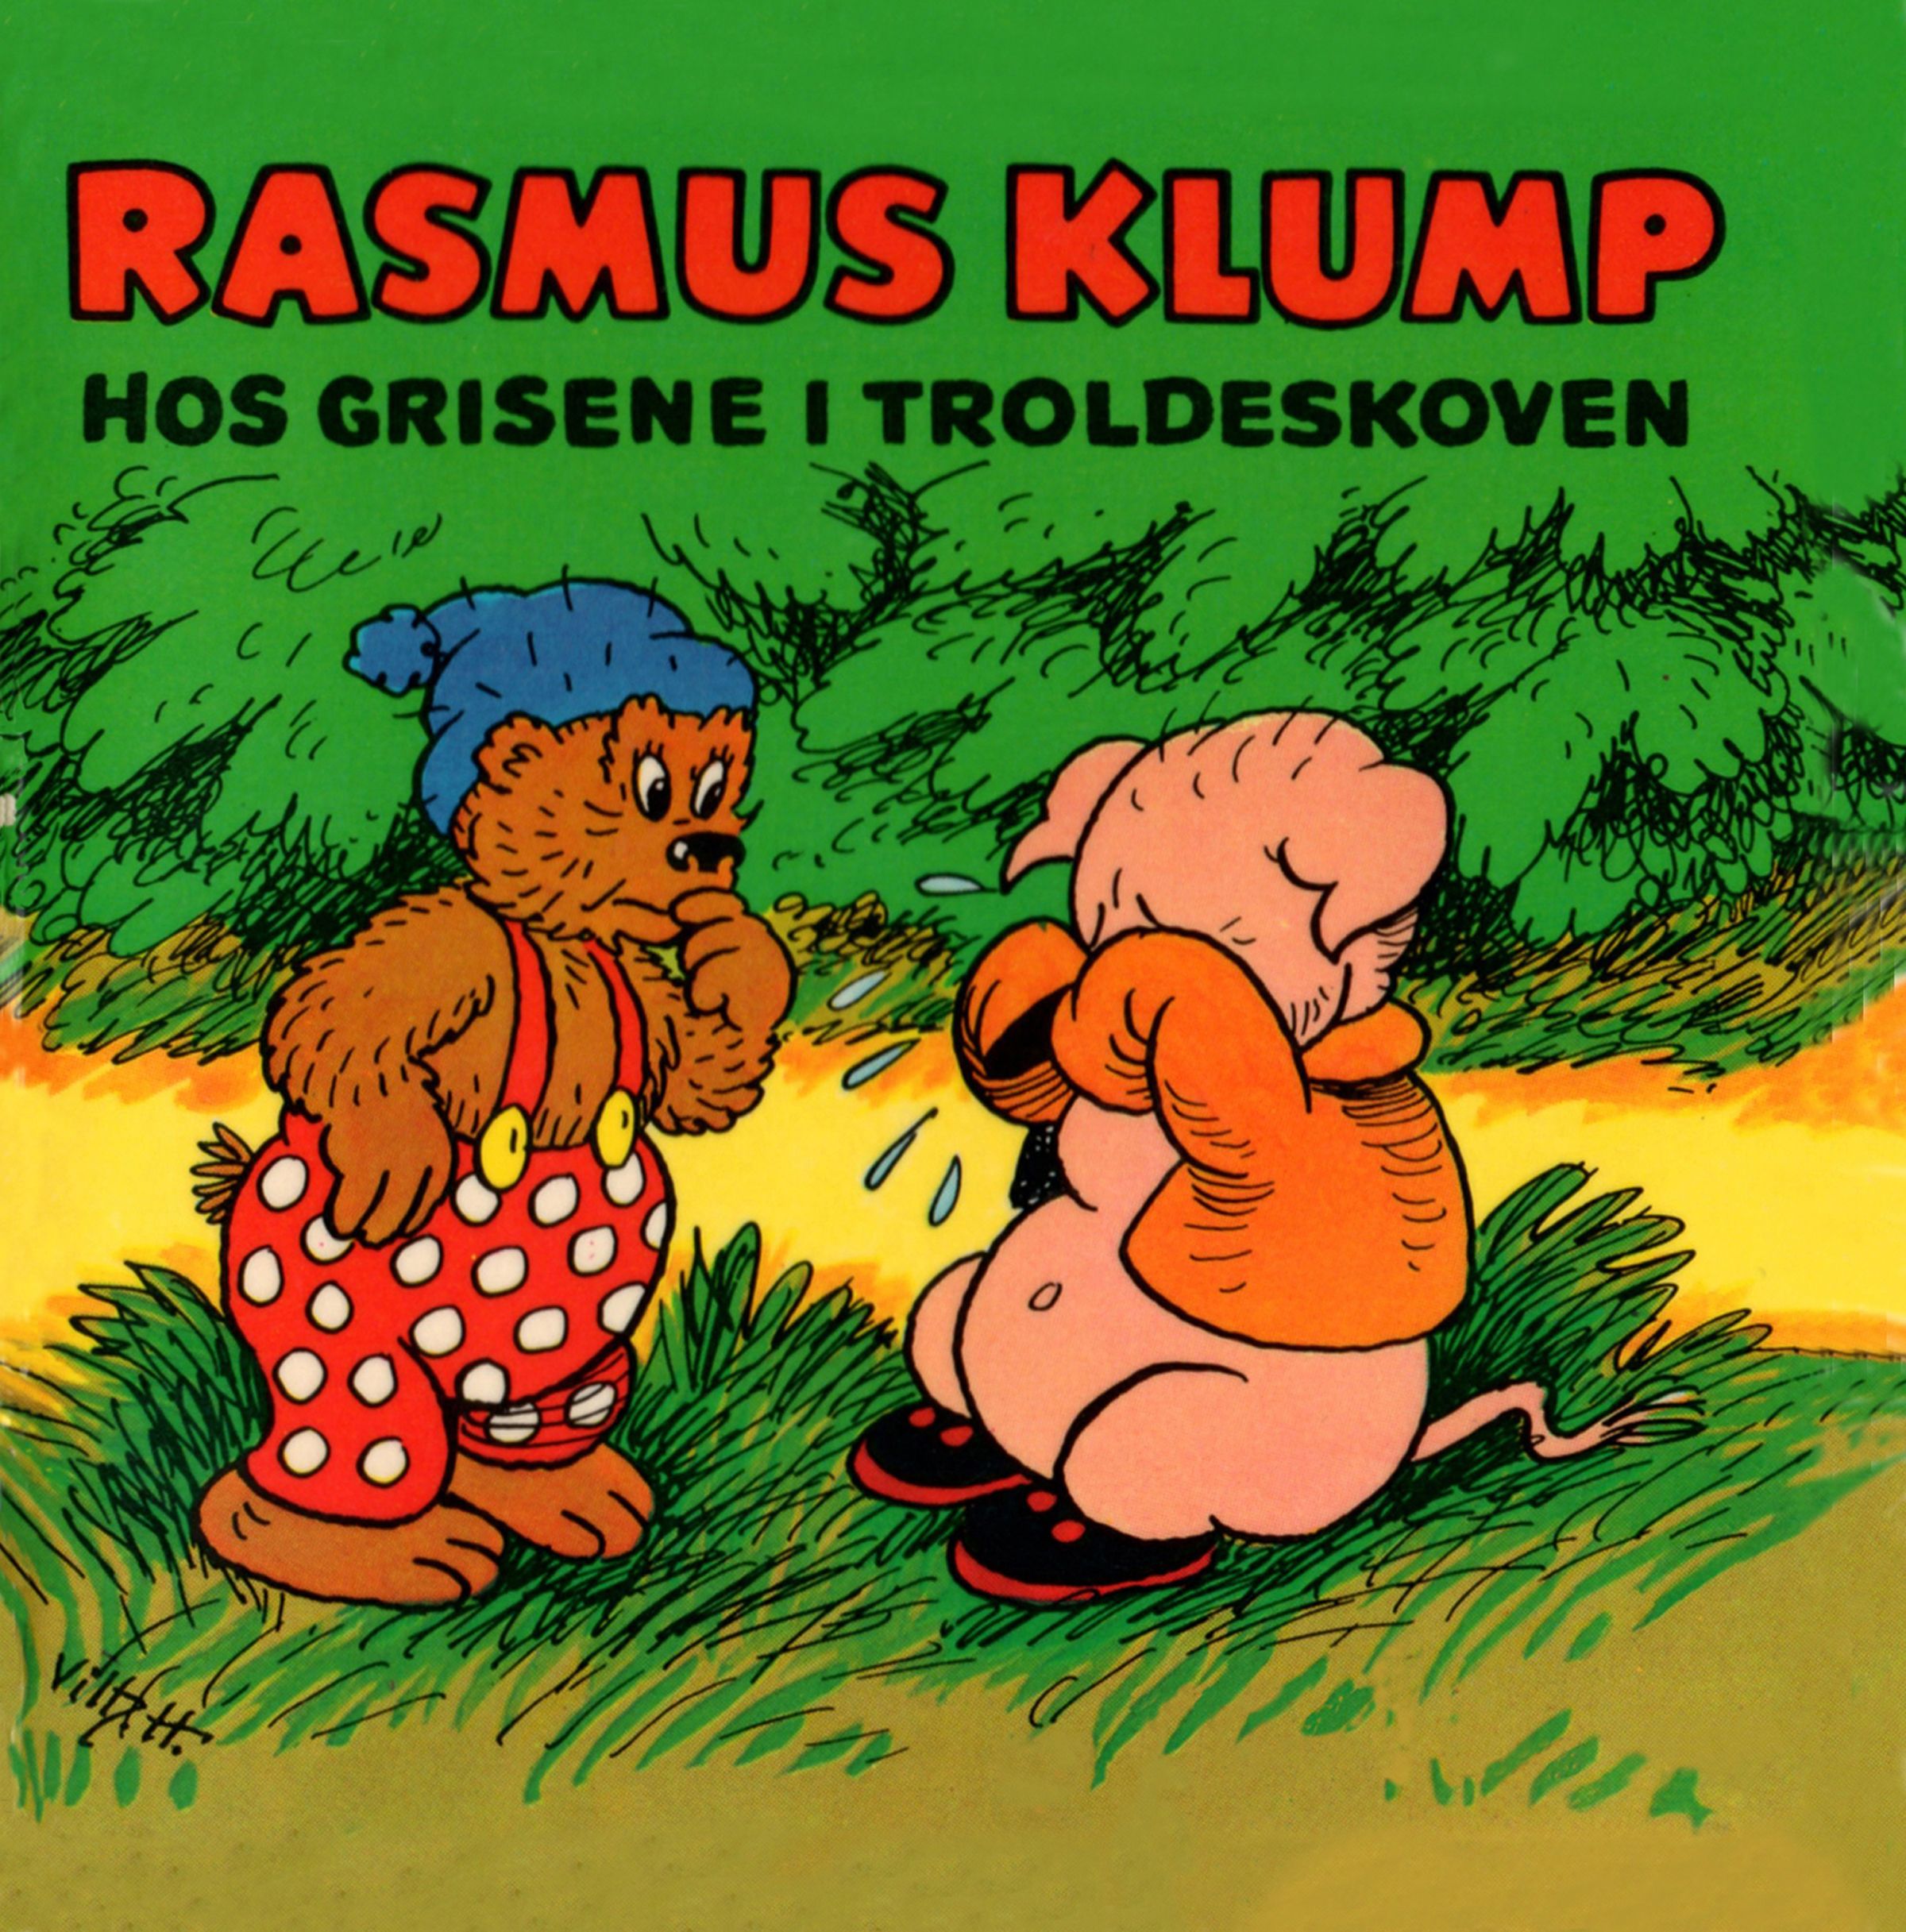 Rasmus Klump hos grisene i troldeskoven, audiobook by Carla Og Vilh. Hansen